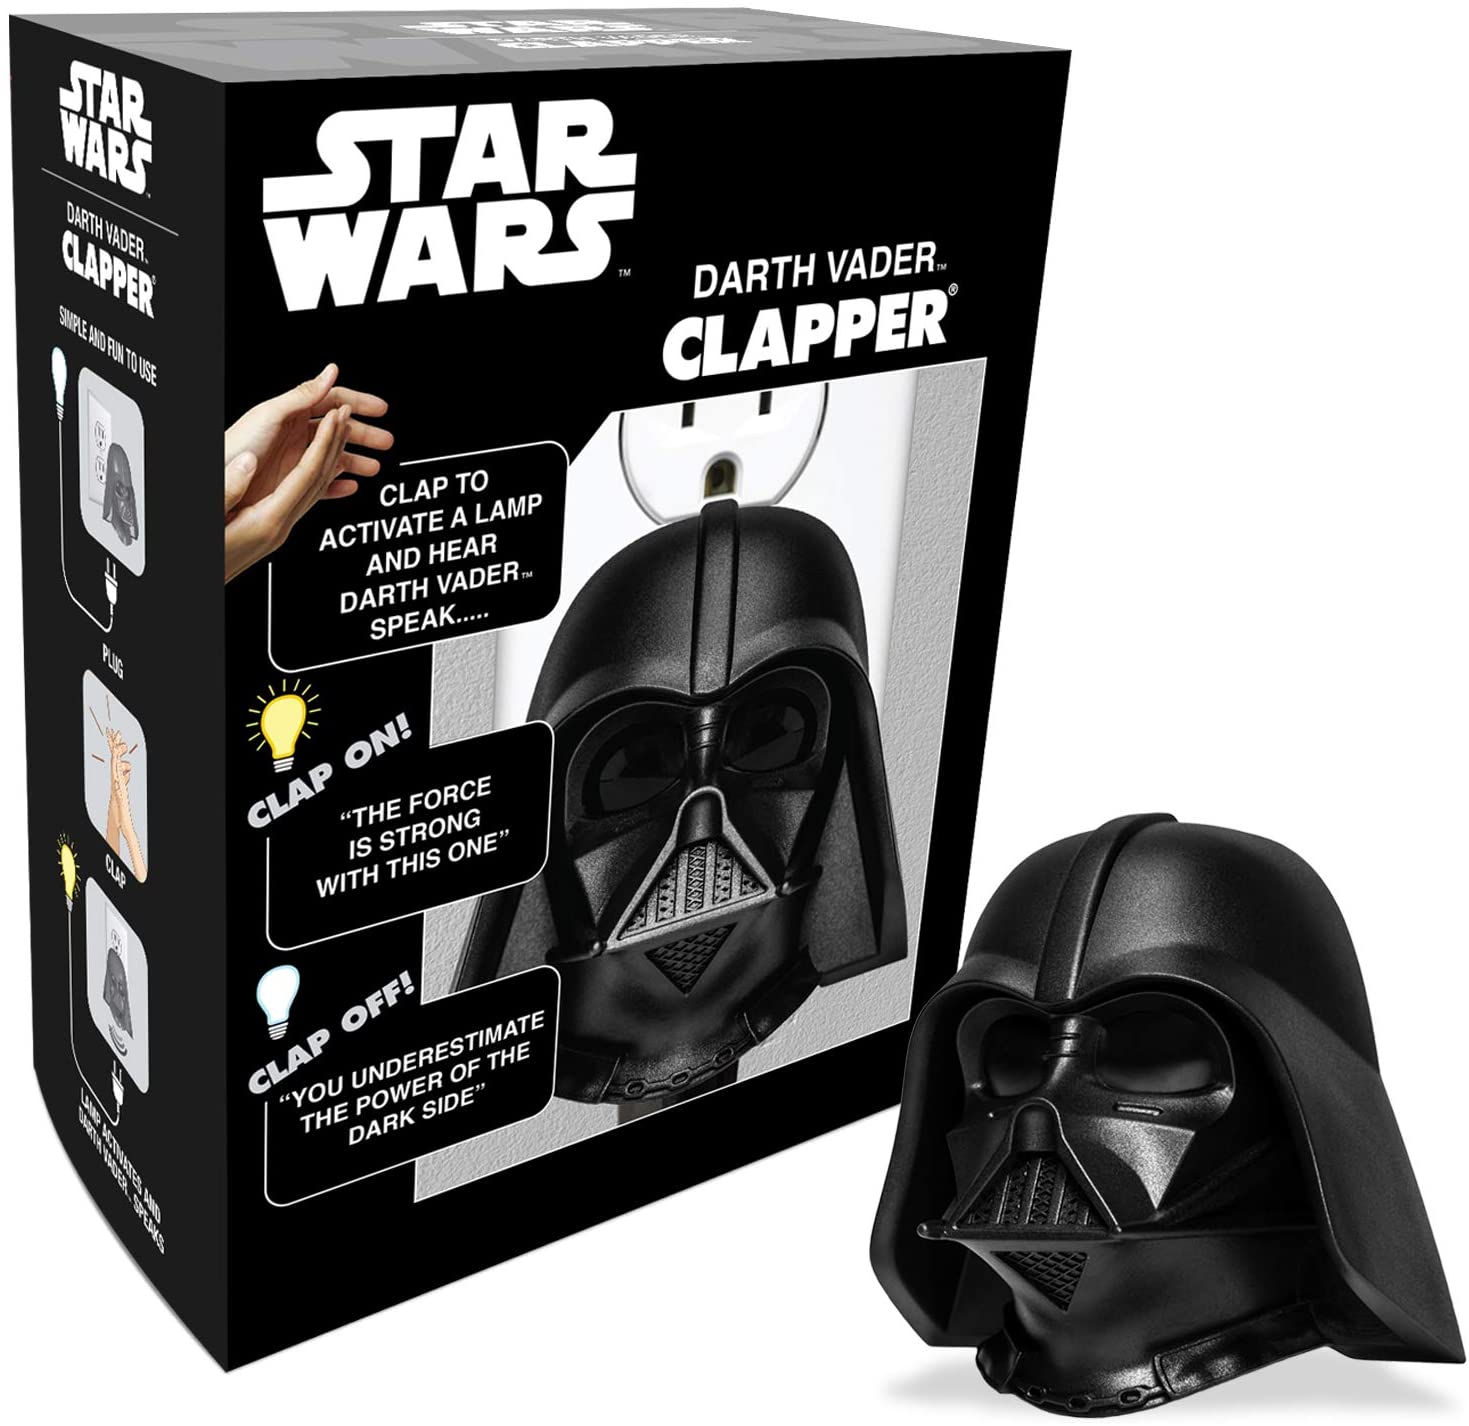 Star Wars Darth Vader Helmet Ceramic Money Box Force Awakens Dark Side Official 